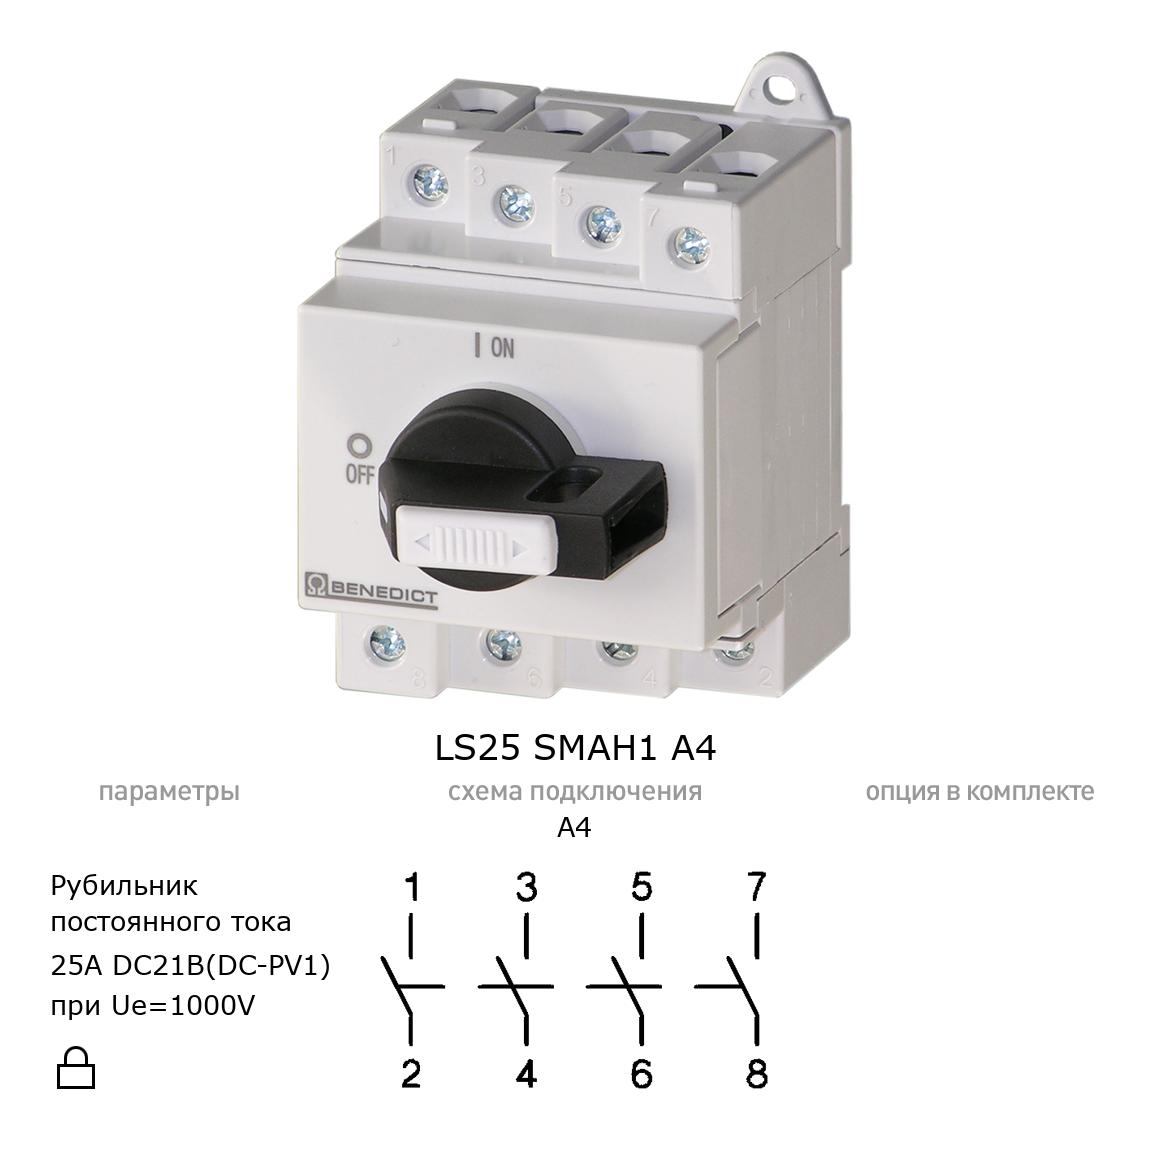 Выключатель нагрузки / рубильник для постоянного тока (DC) LS25 SMAH1 A4 BENEDICT